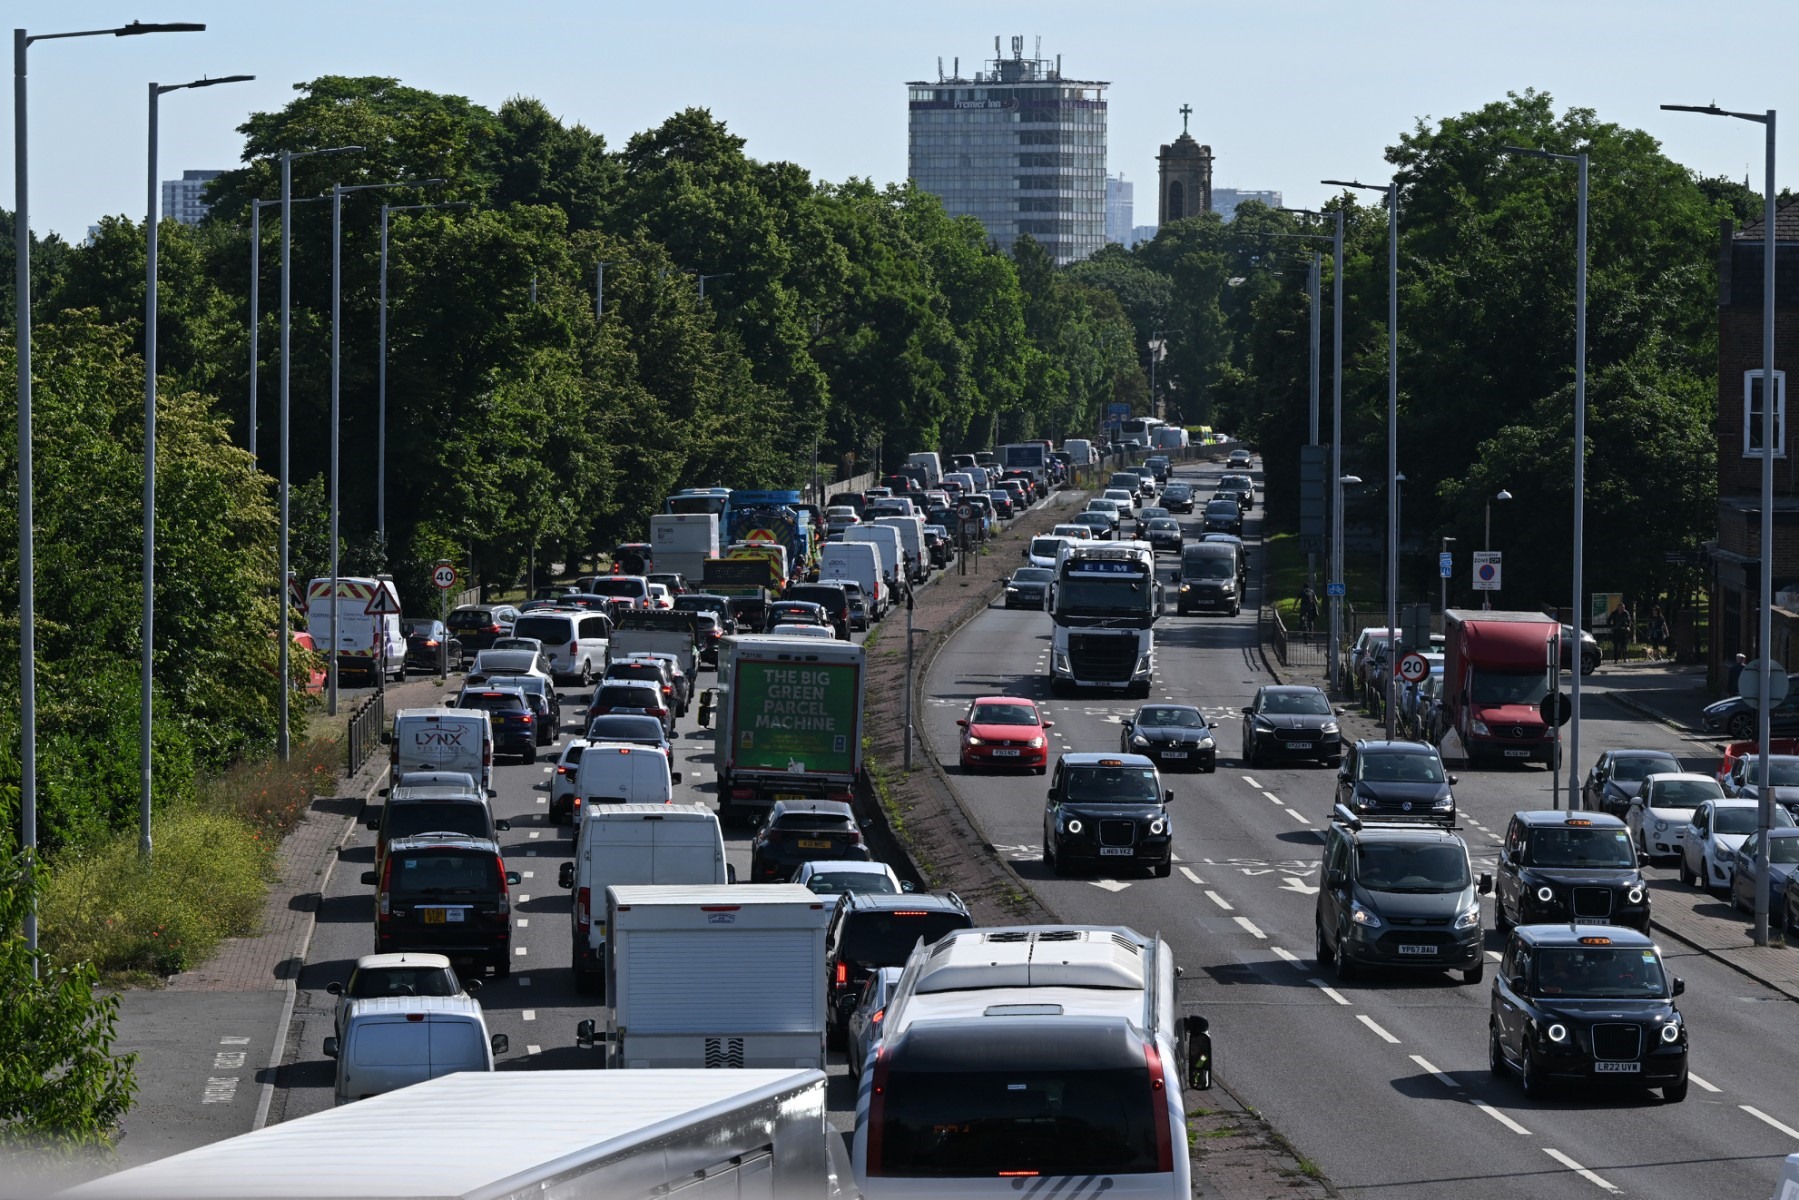 Ô tô xếp hàng tham gia giao thông ở Hammersmith, Anh tháng 6.2022. Ảnh: AFP